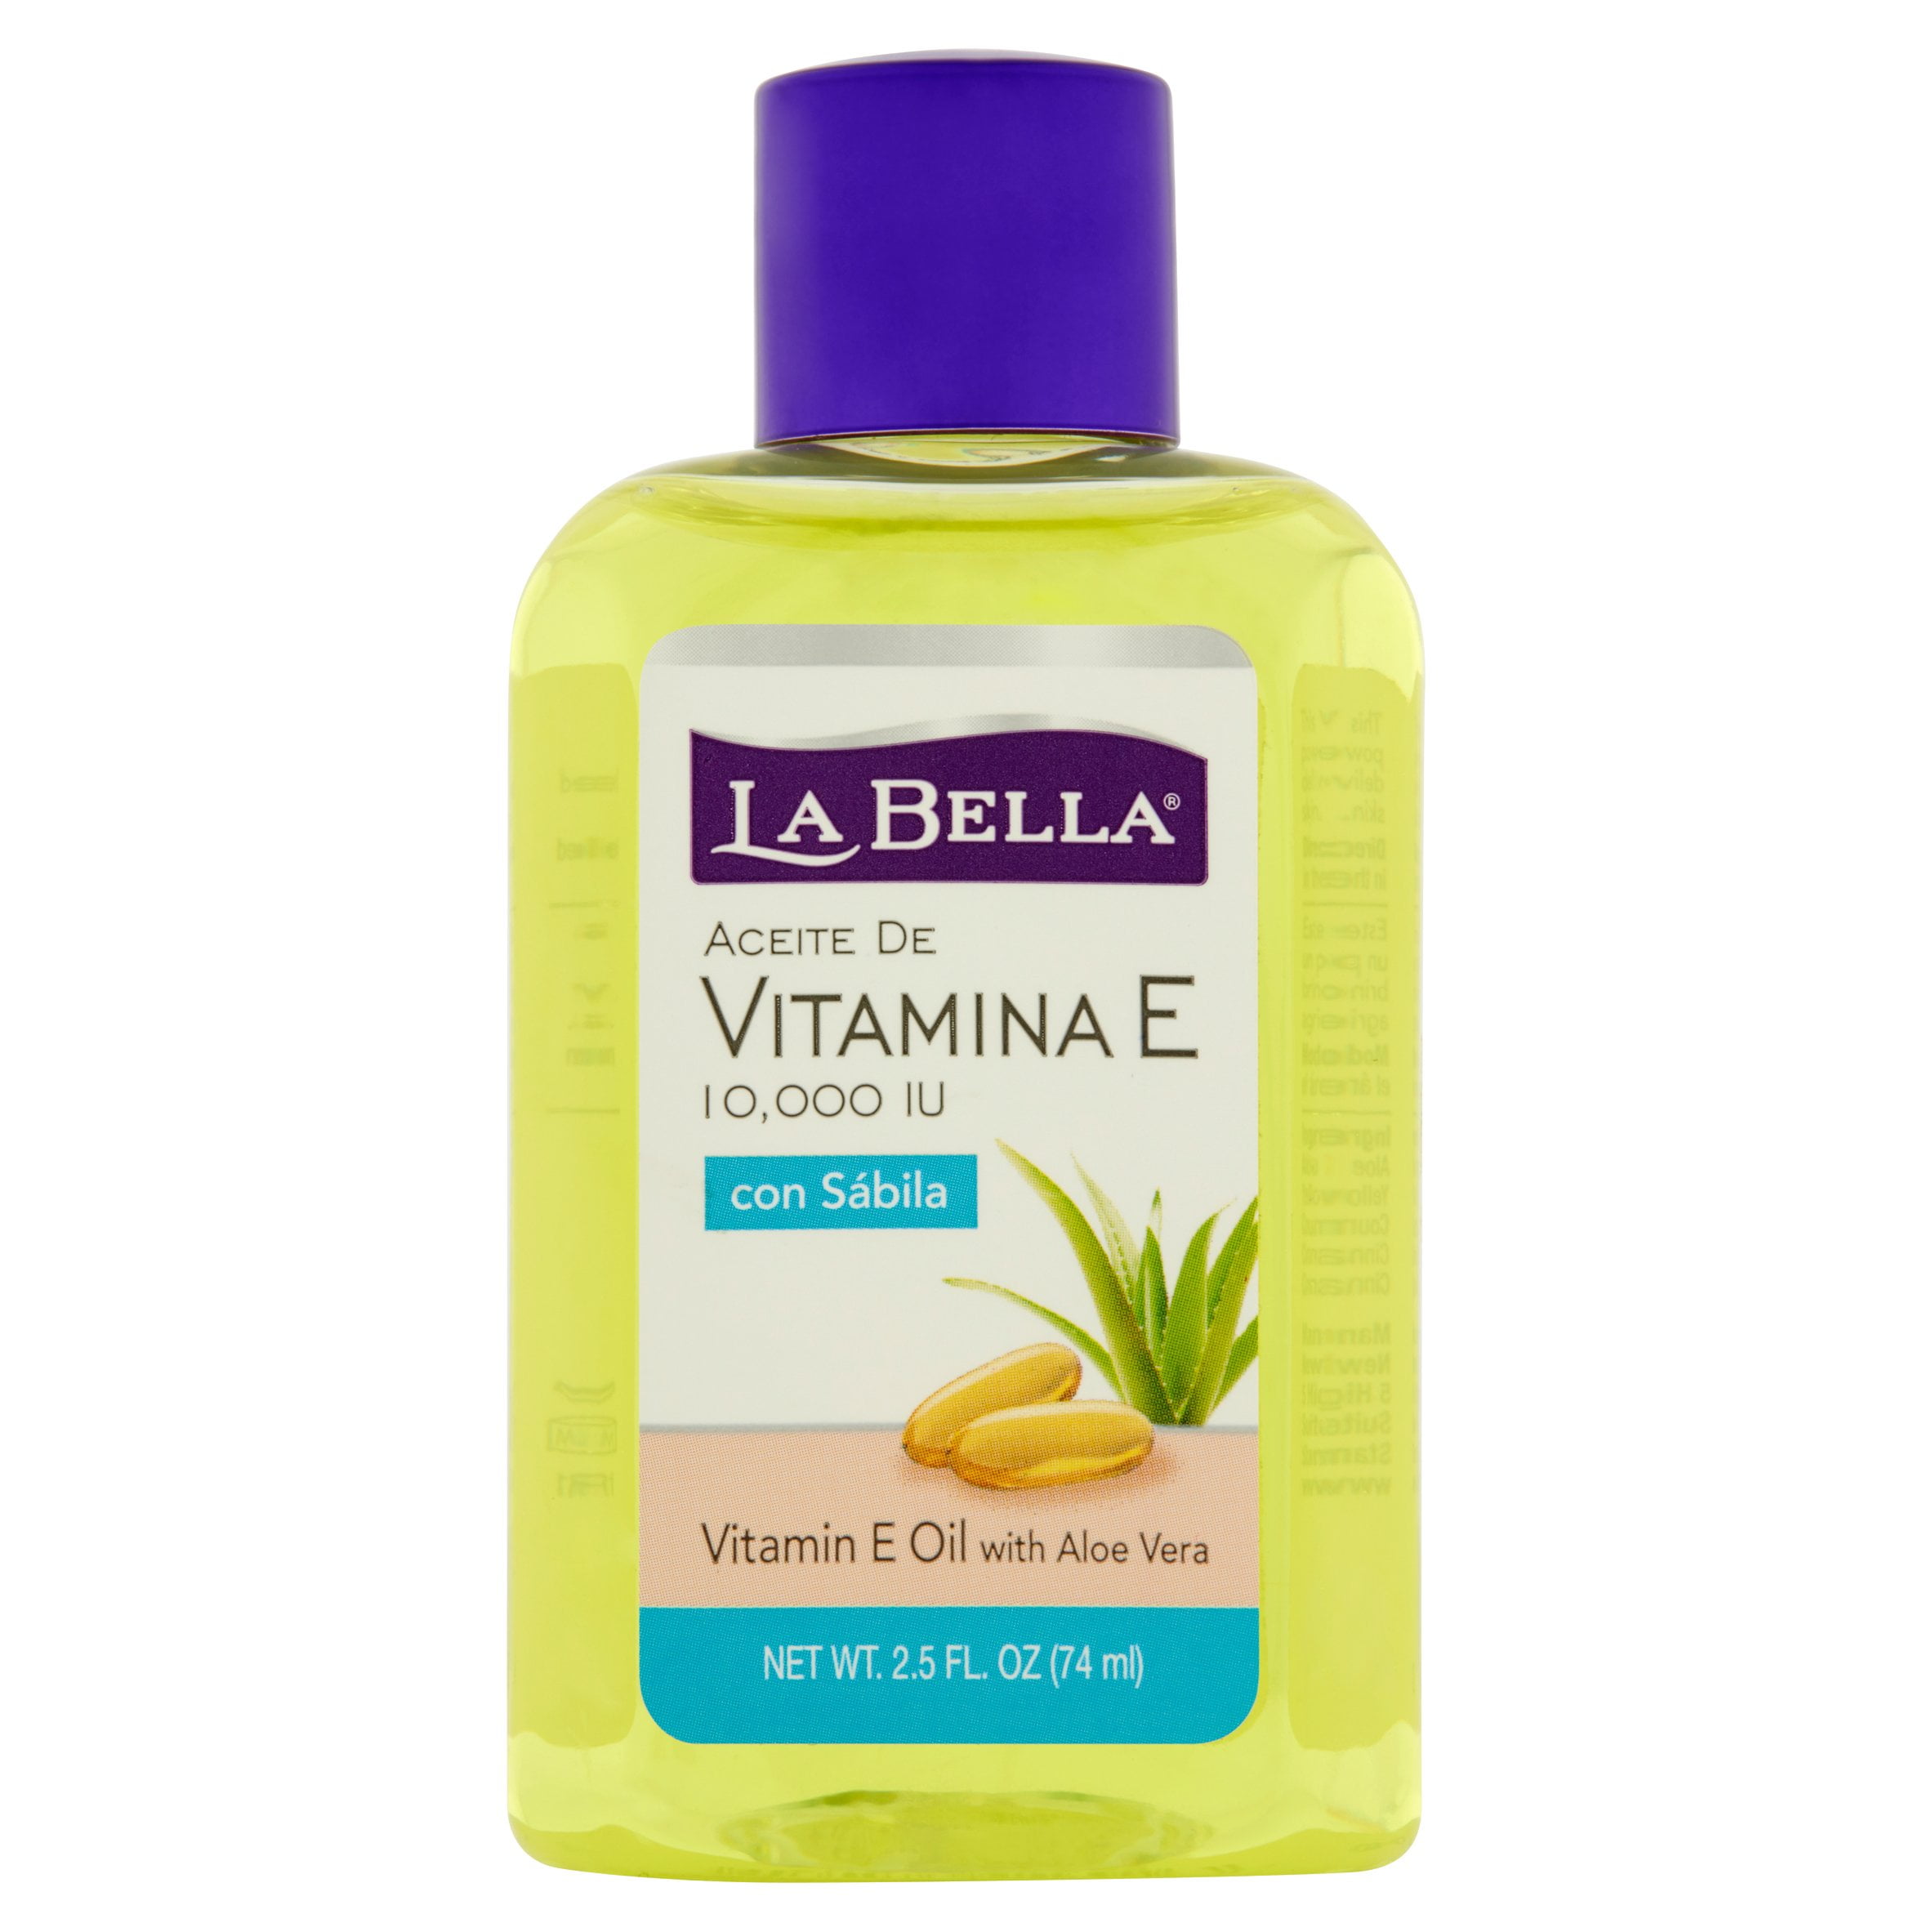 Aannames, aannames. Raad eens Nodig uit camouflage La Bella 10 000 IU Vitamin E Oil with Aloe Vera 2.5 fl oz - Walmart.com